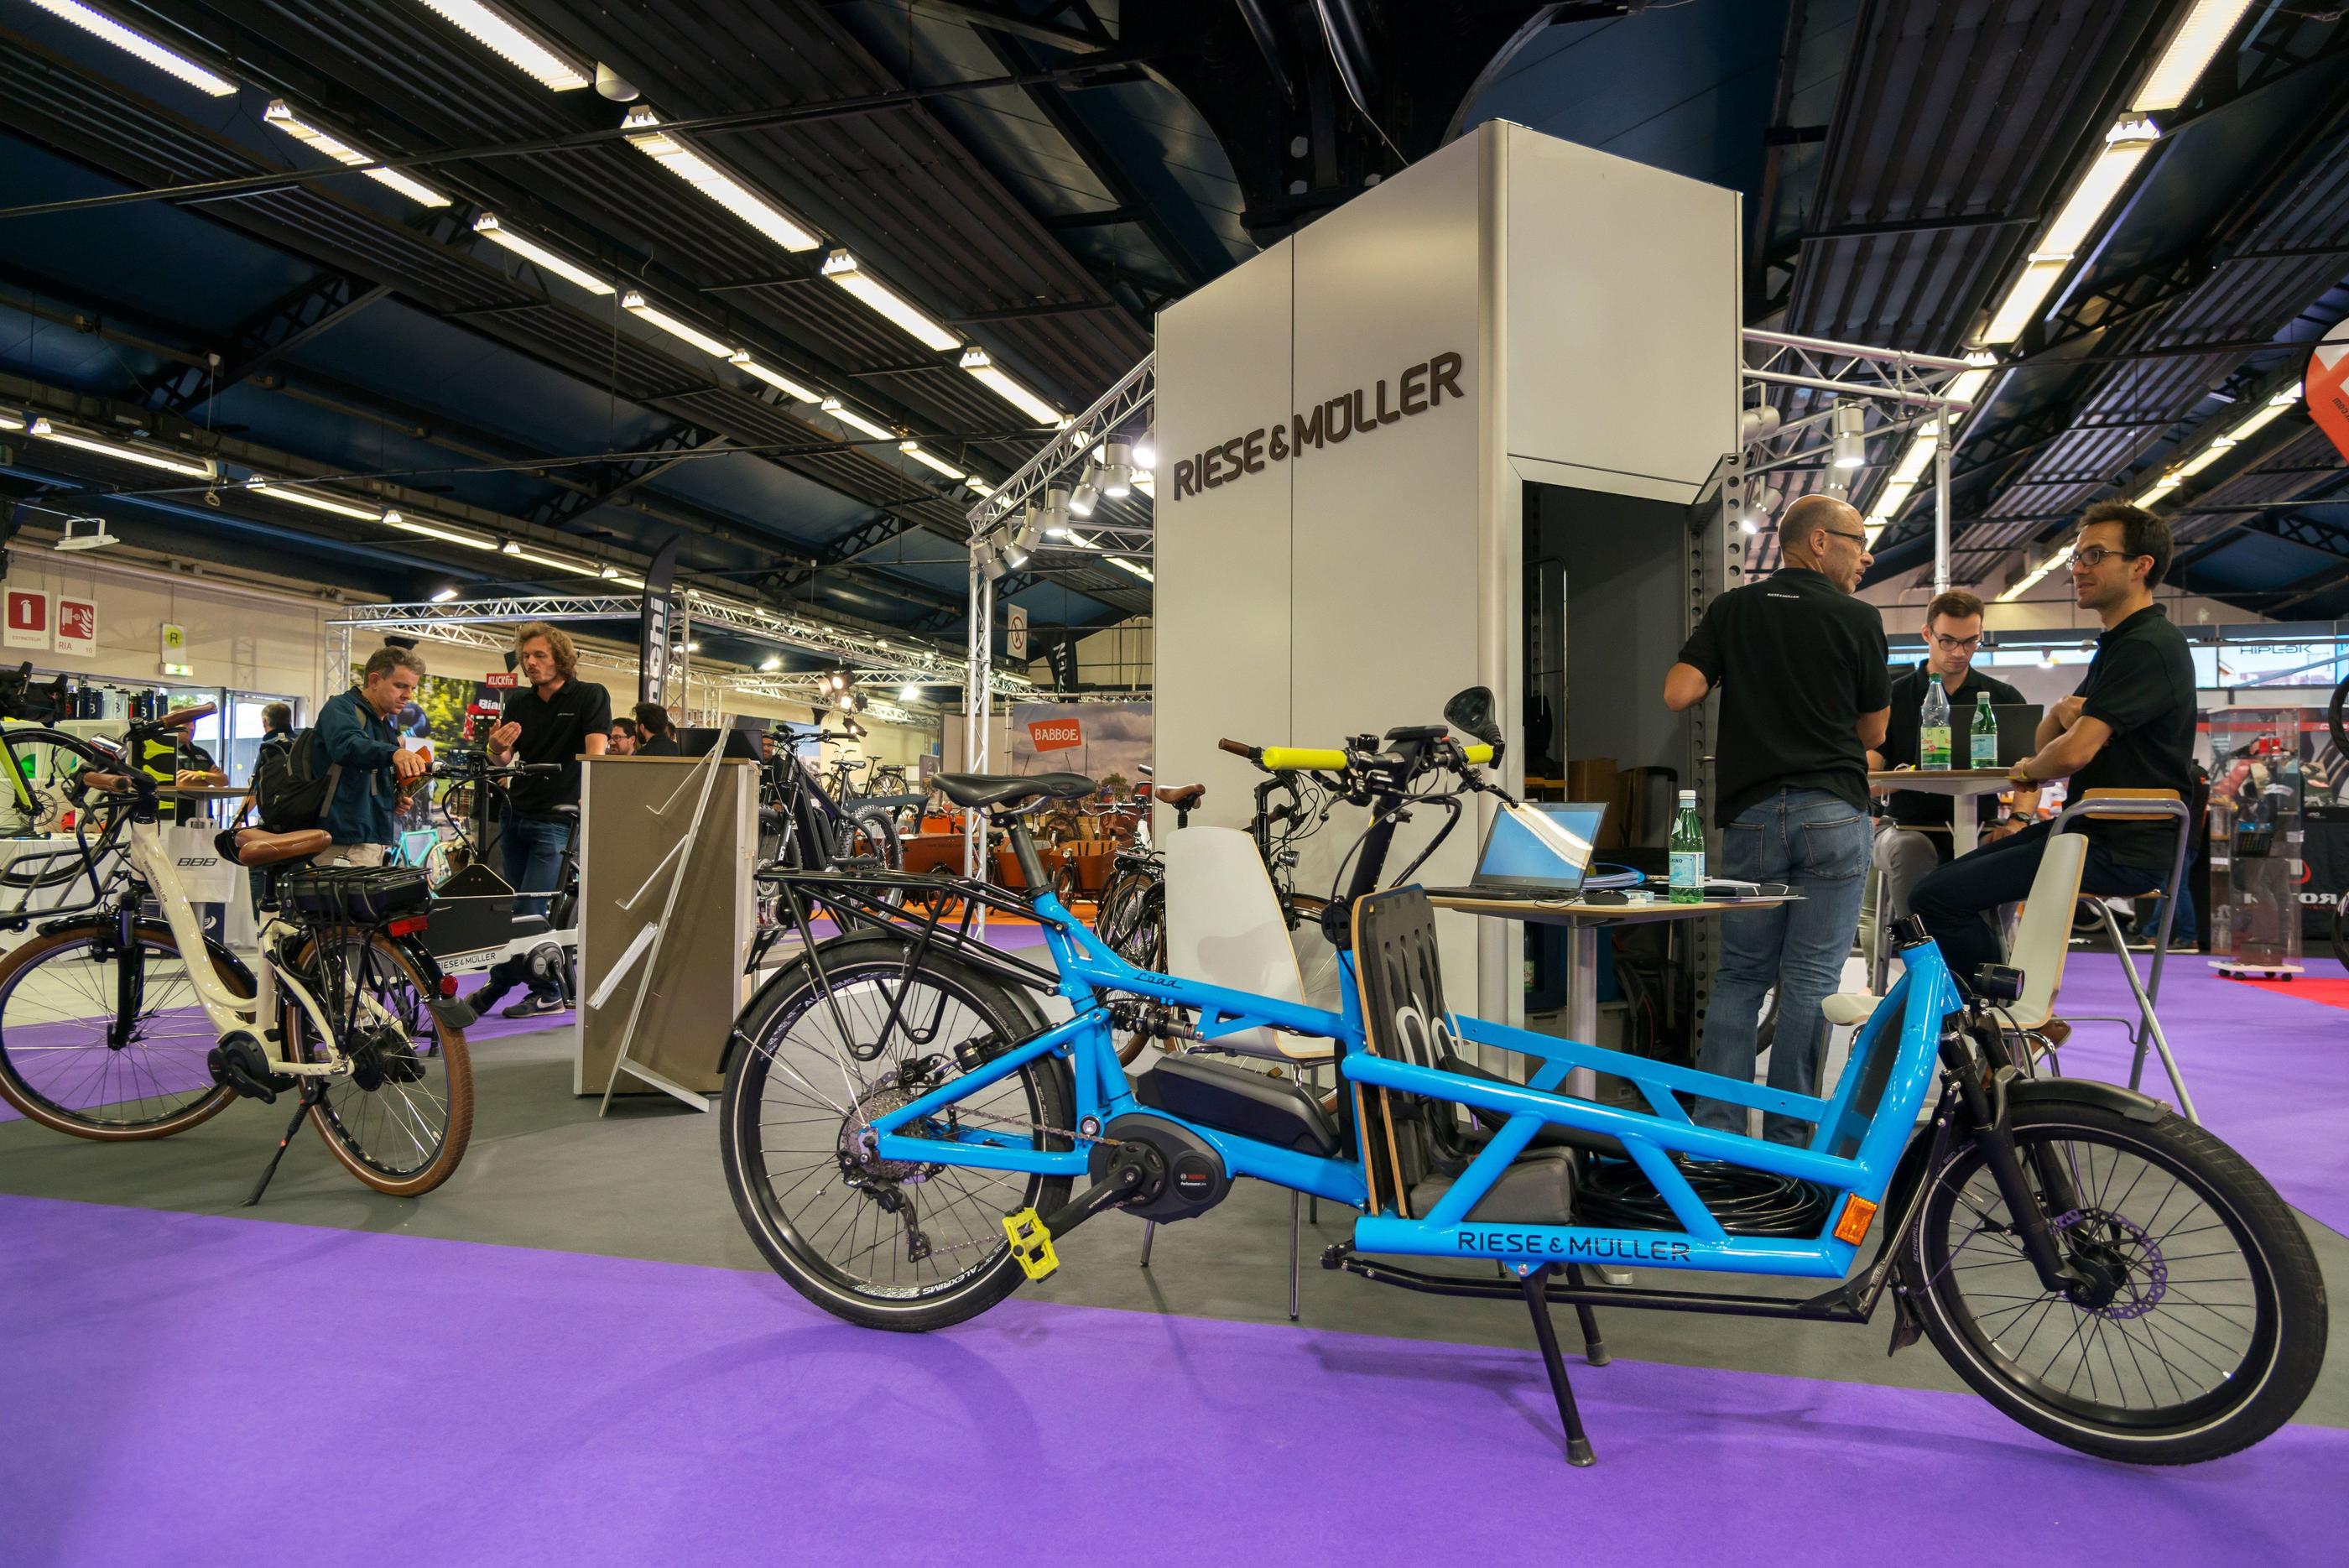 Les fabricants de vélo ont tenu leur salon au Parc de Floral de Paris (XIIe), jusqu'à ce lundi 29 avril, dans un contexte de baisse des ventes. LP/Patrice Bondurand